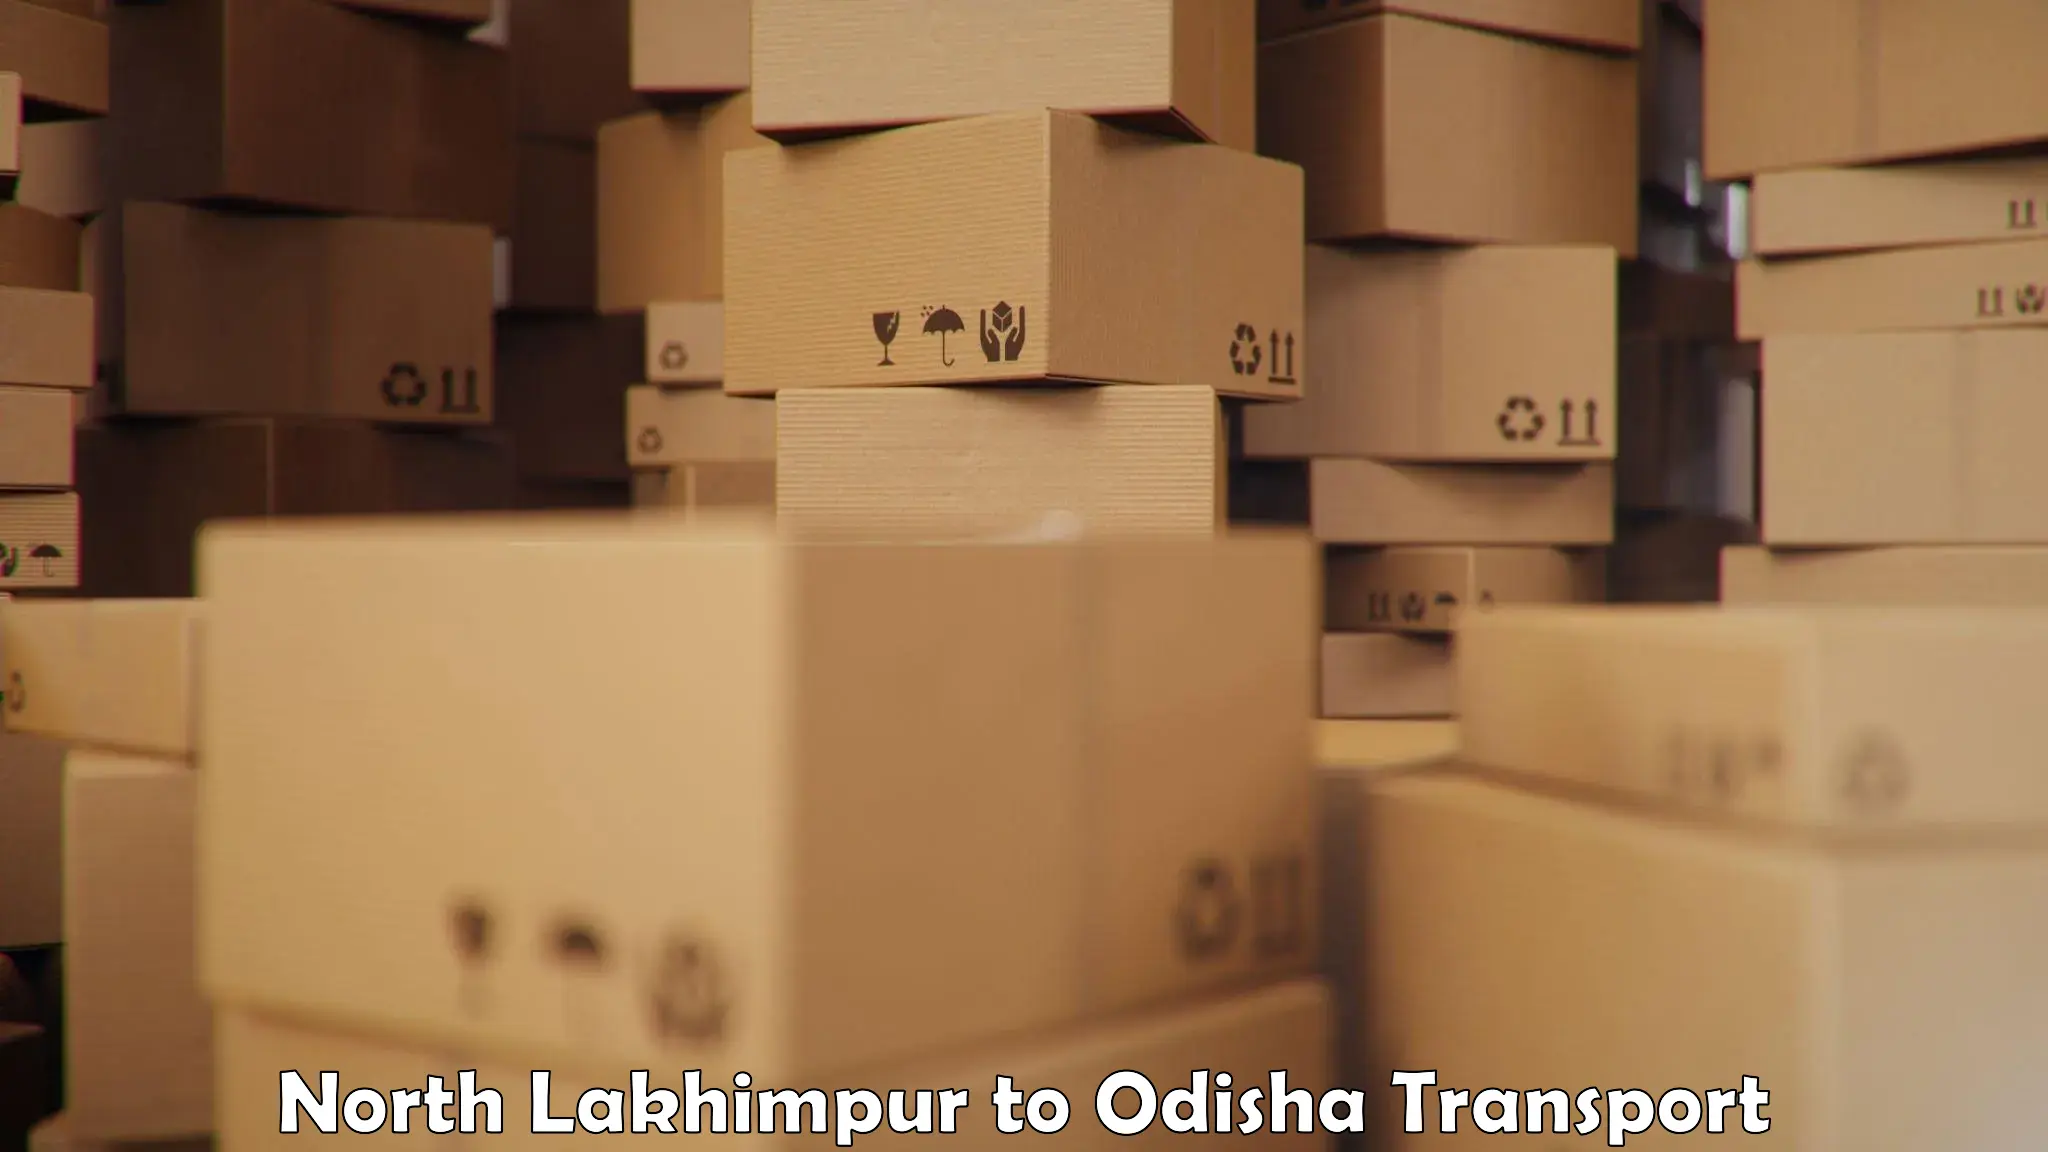 Furniture transport service North Lakhimpur to Tihidi